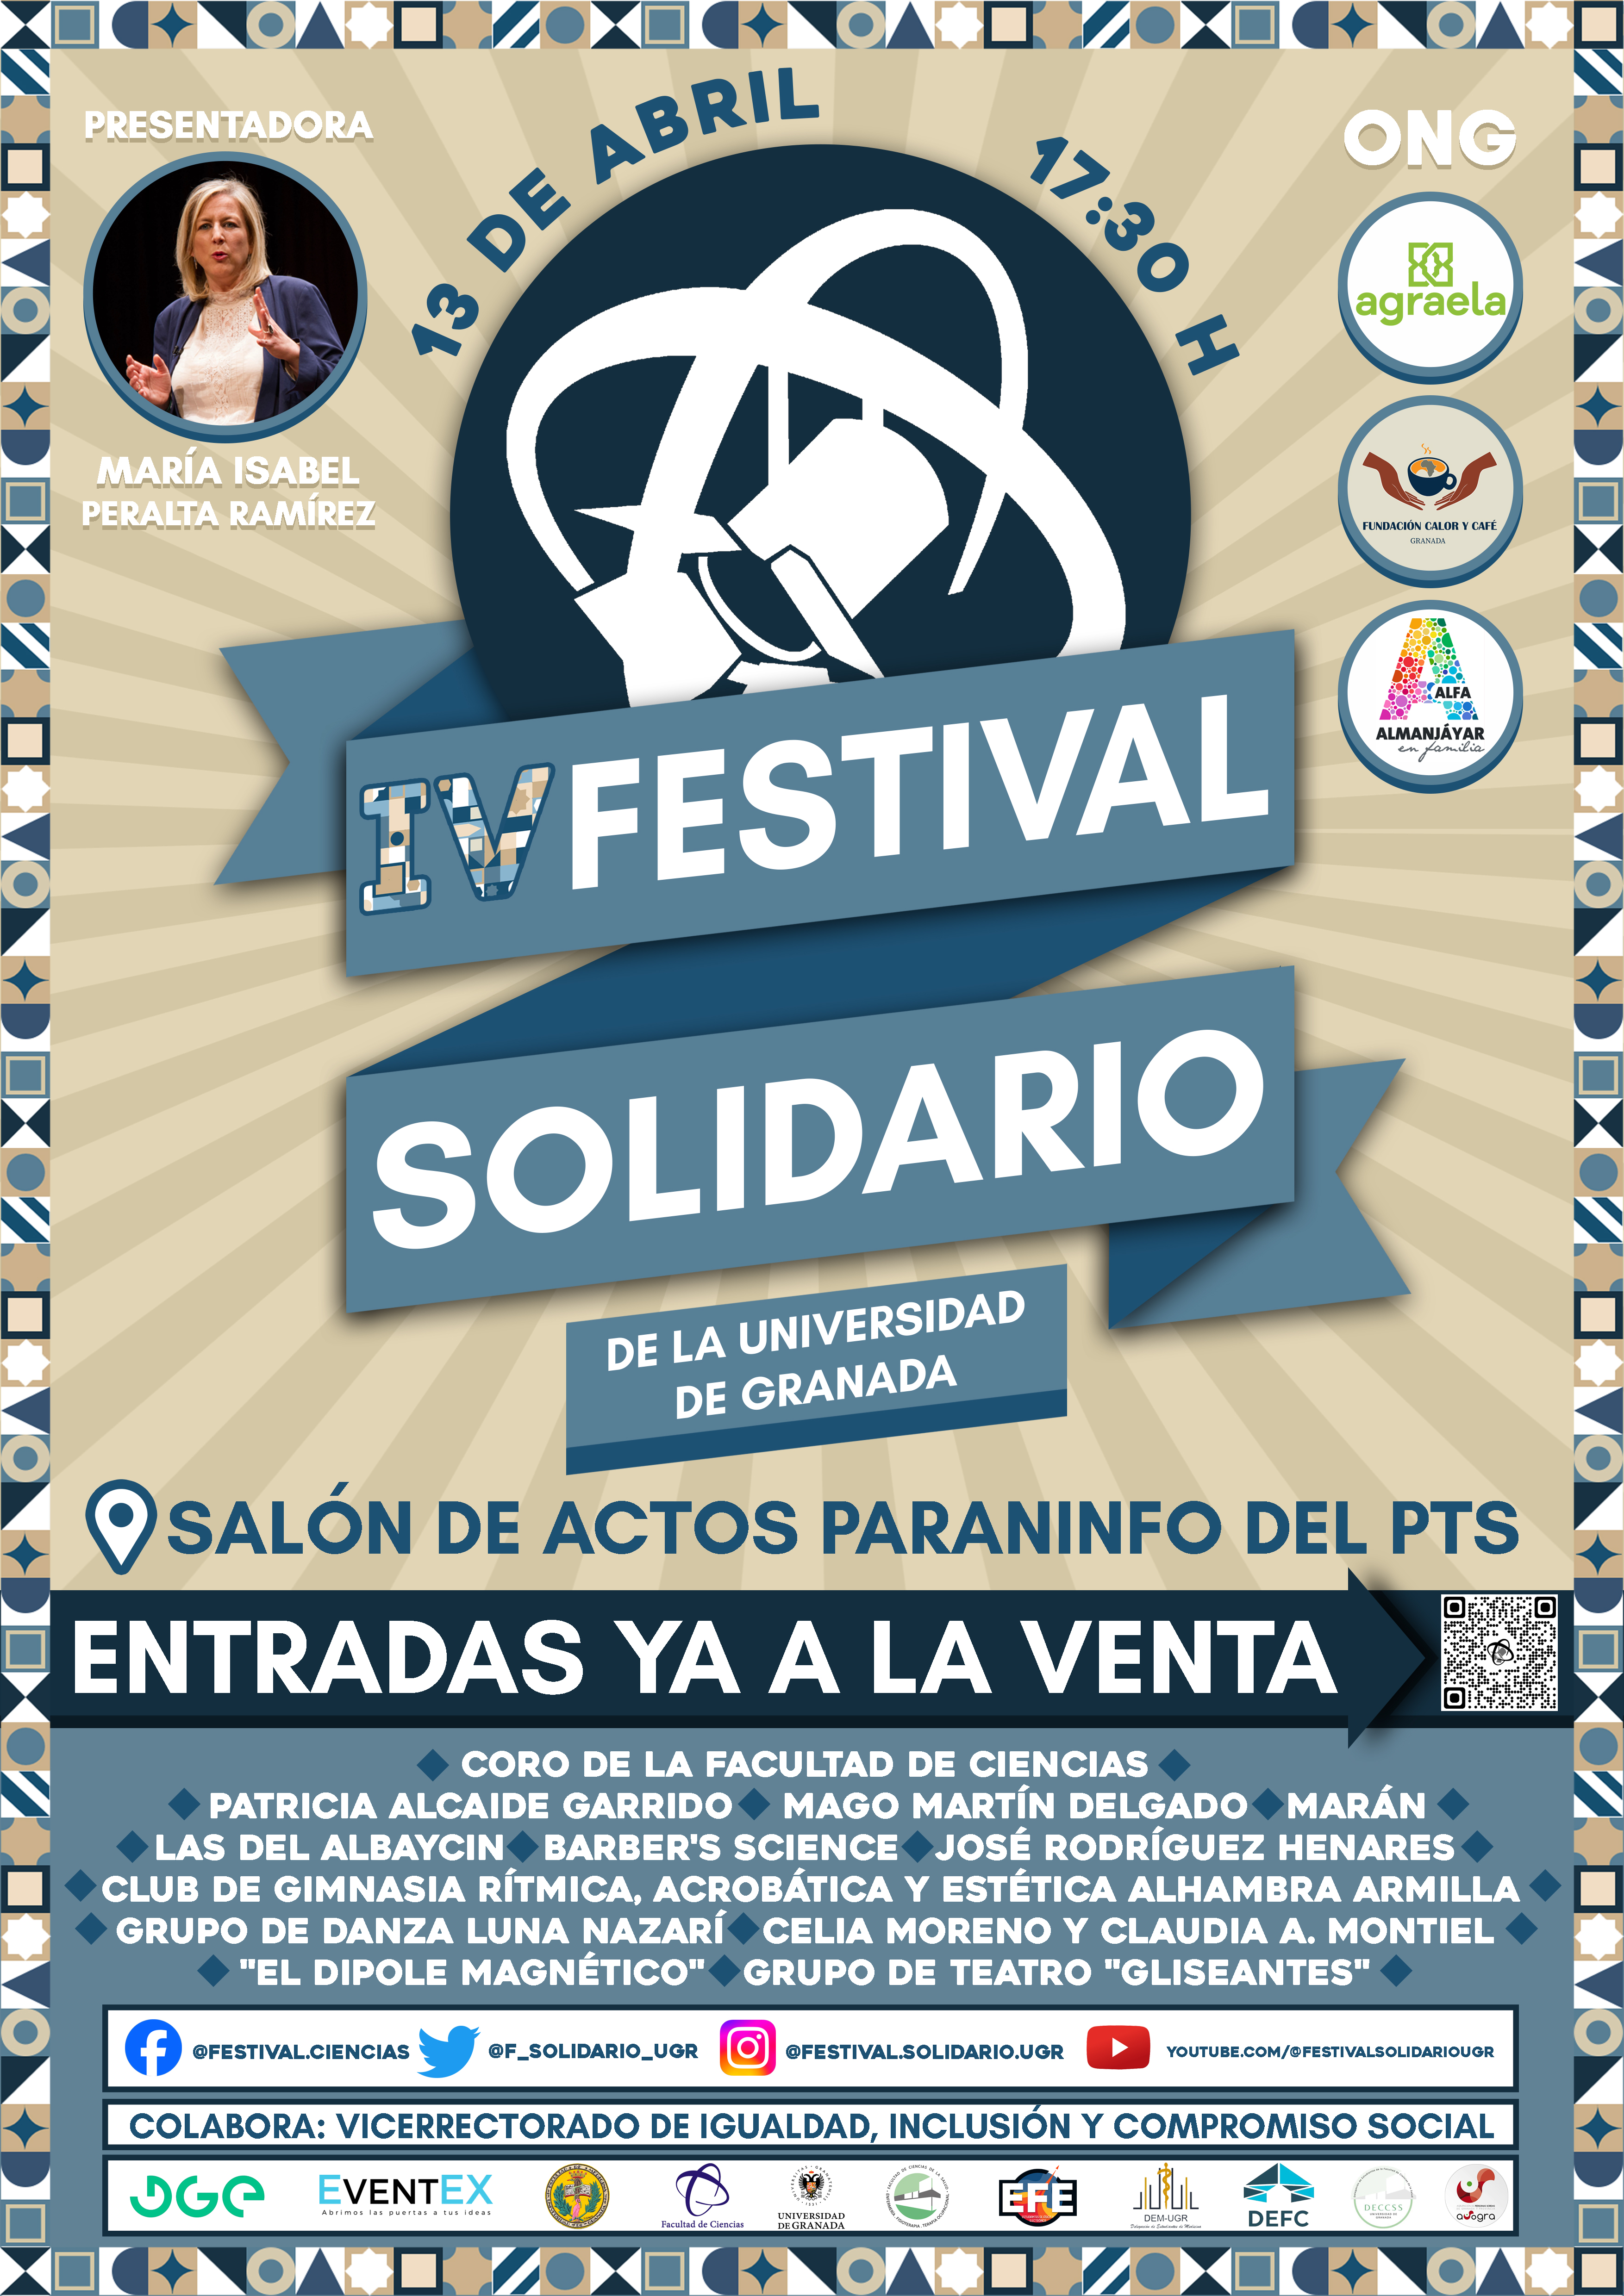 IV Festival Solidario: sábado, 13 de abril, a las 17:30 horas en Granada